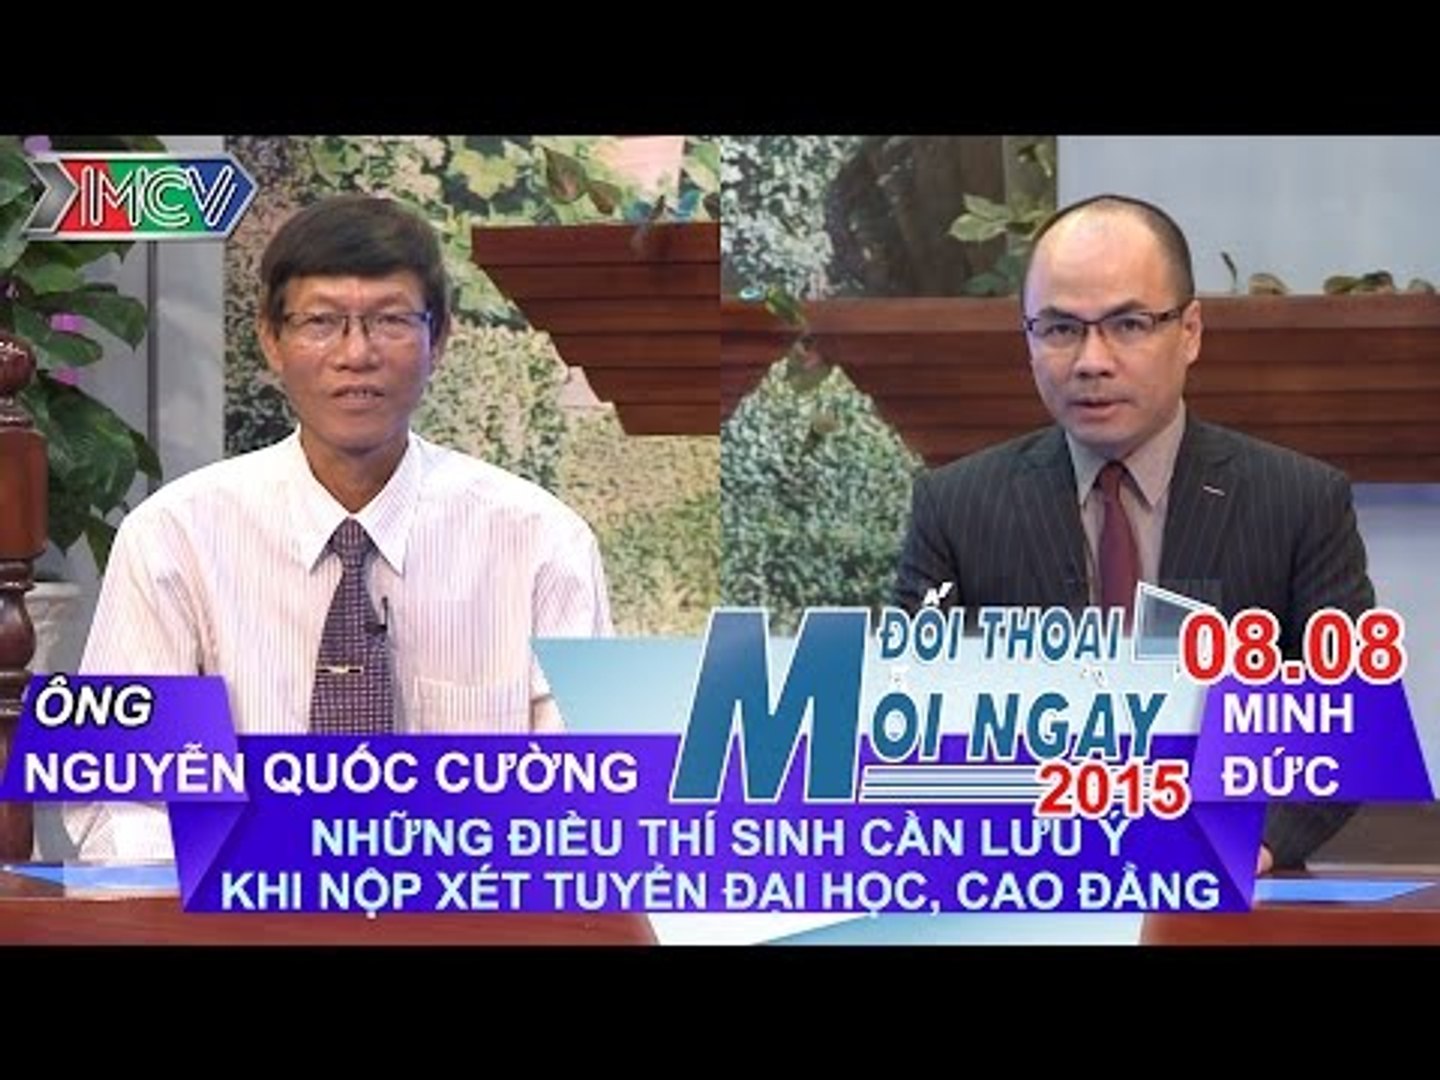 Vấn đề thí sinh cần quan tâm - Nguyễn Quốc Cường | ĐTMN 080815